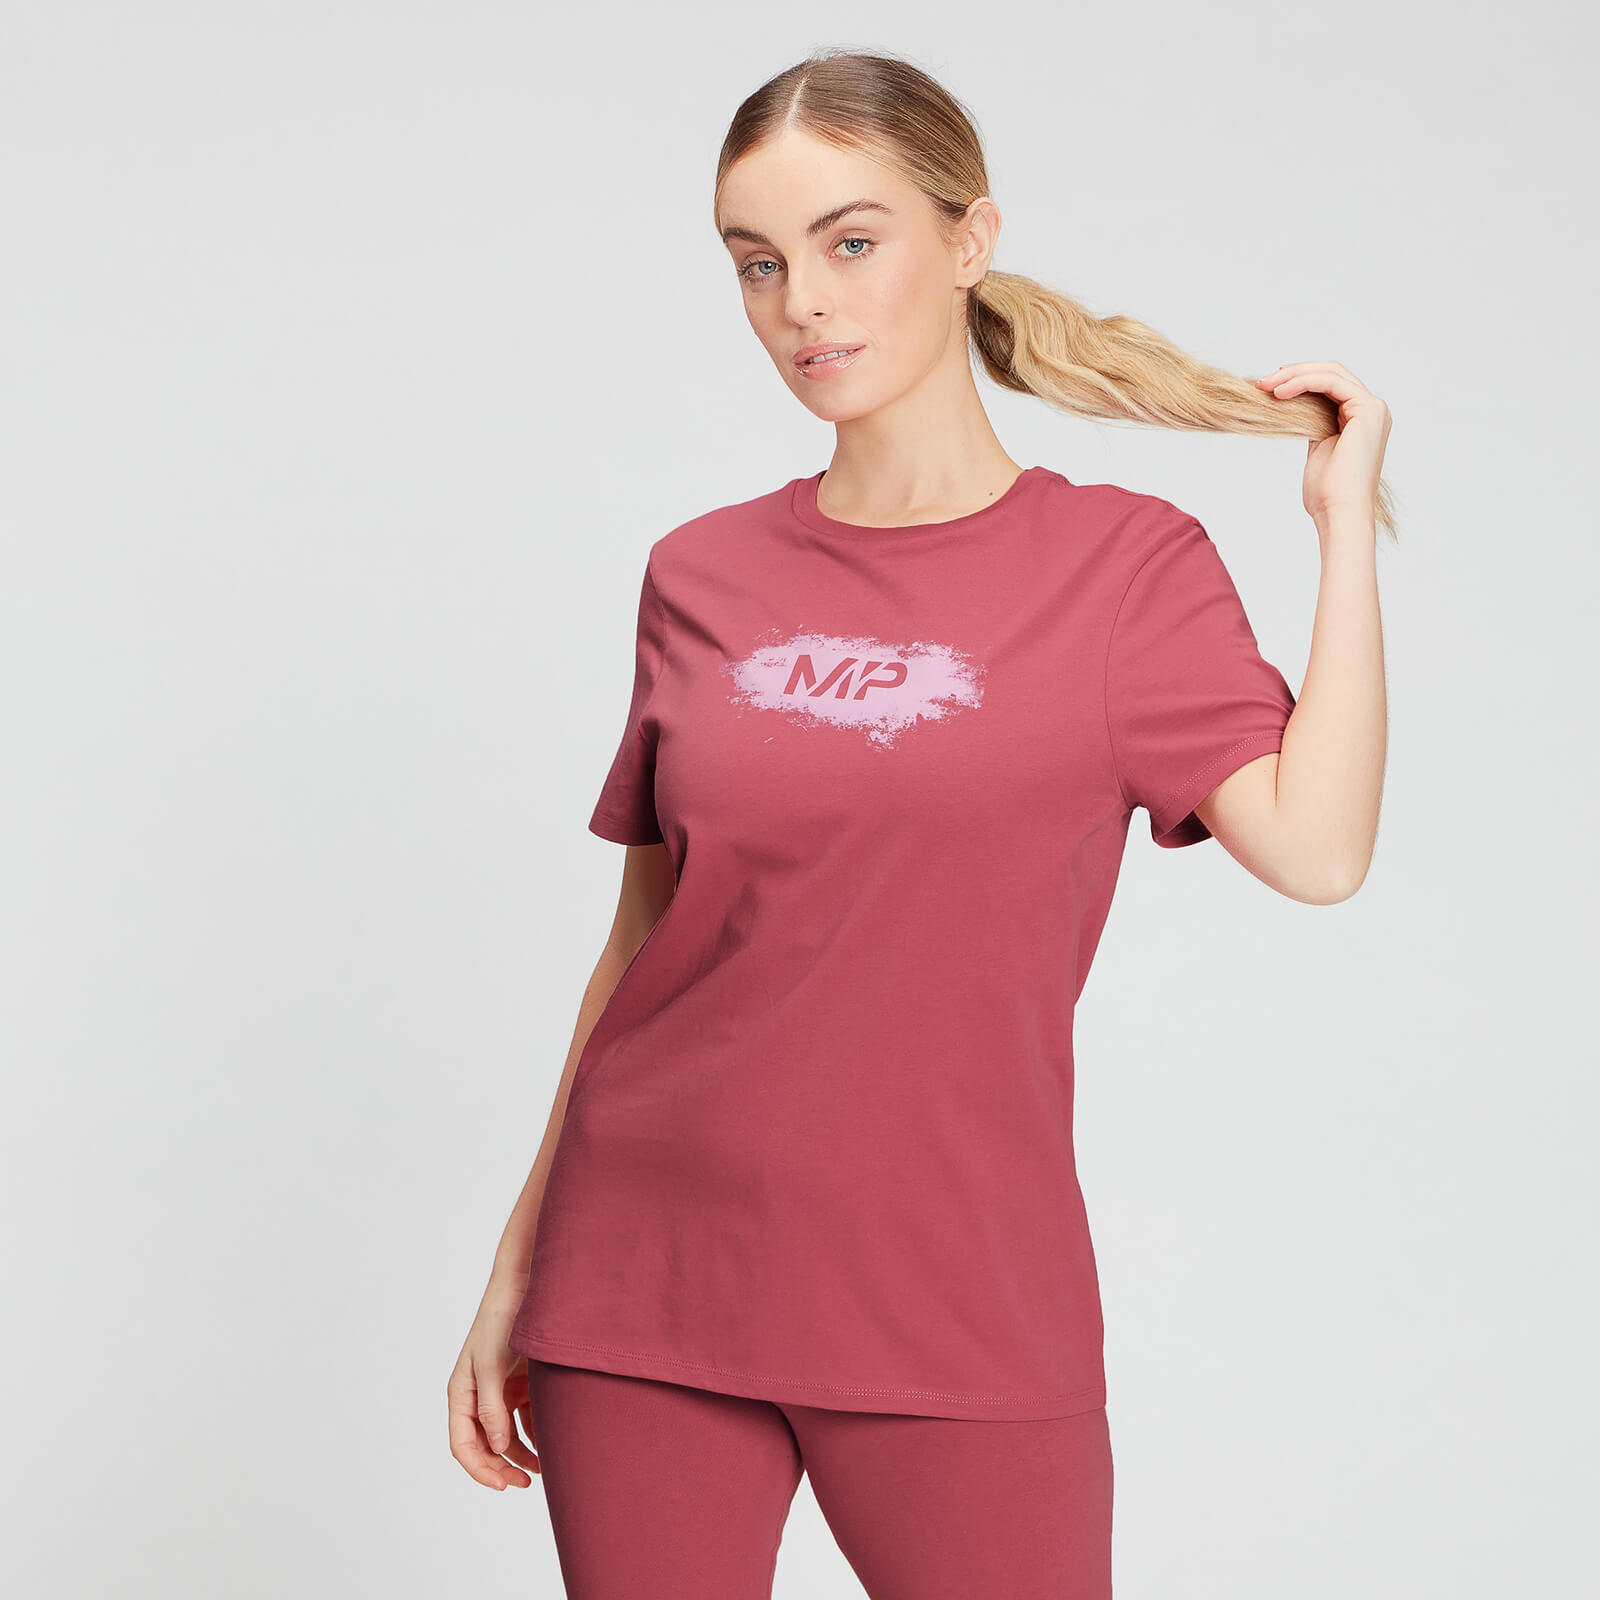 Купить MP Women's Chalk Graphic T-Shirt - Berry Pink - XS, Myprotein International